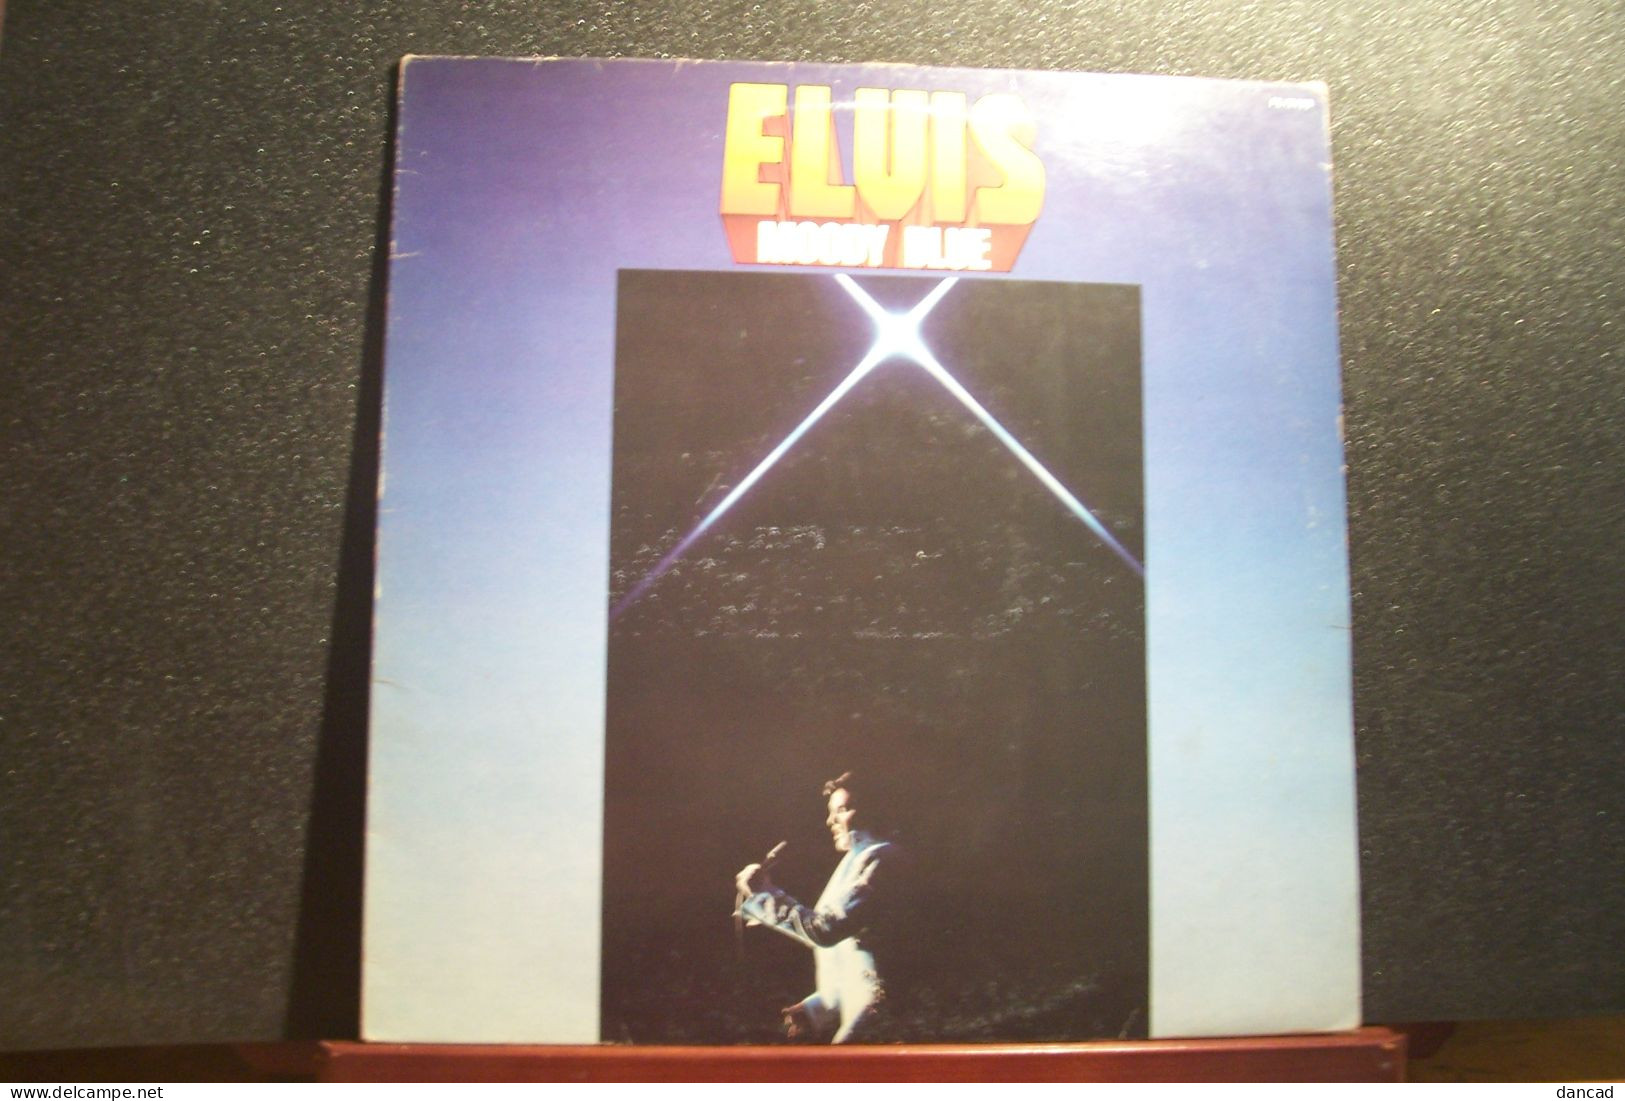 ELVIS  PRESLEY   - ELVIS  COUNTRY- (  VINYLE  33 TOURS )  - Ref: RCA  PL 12428   - ( Année  1977 ) - Rock